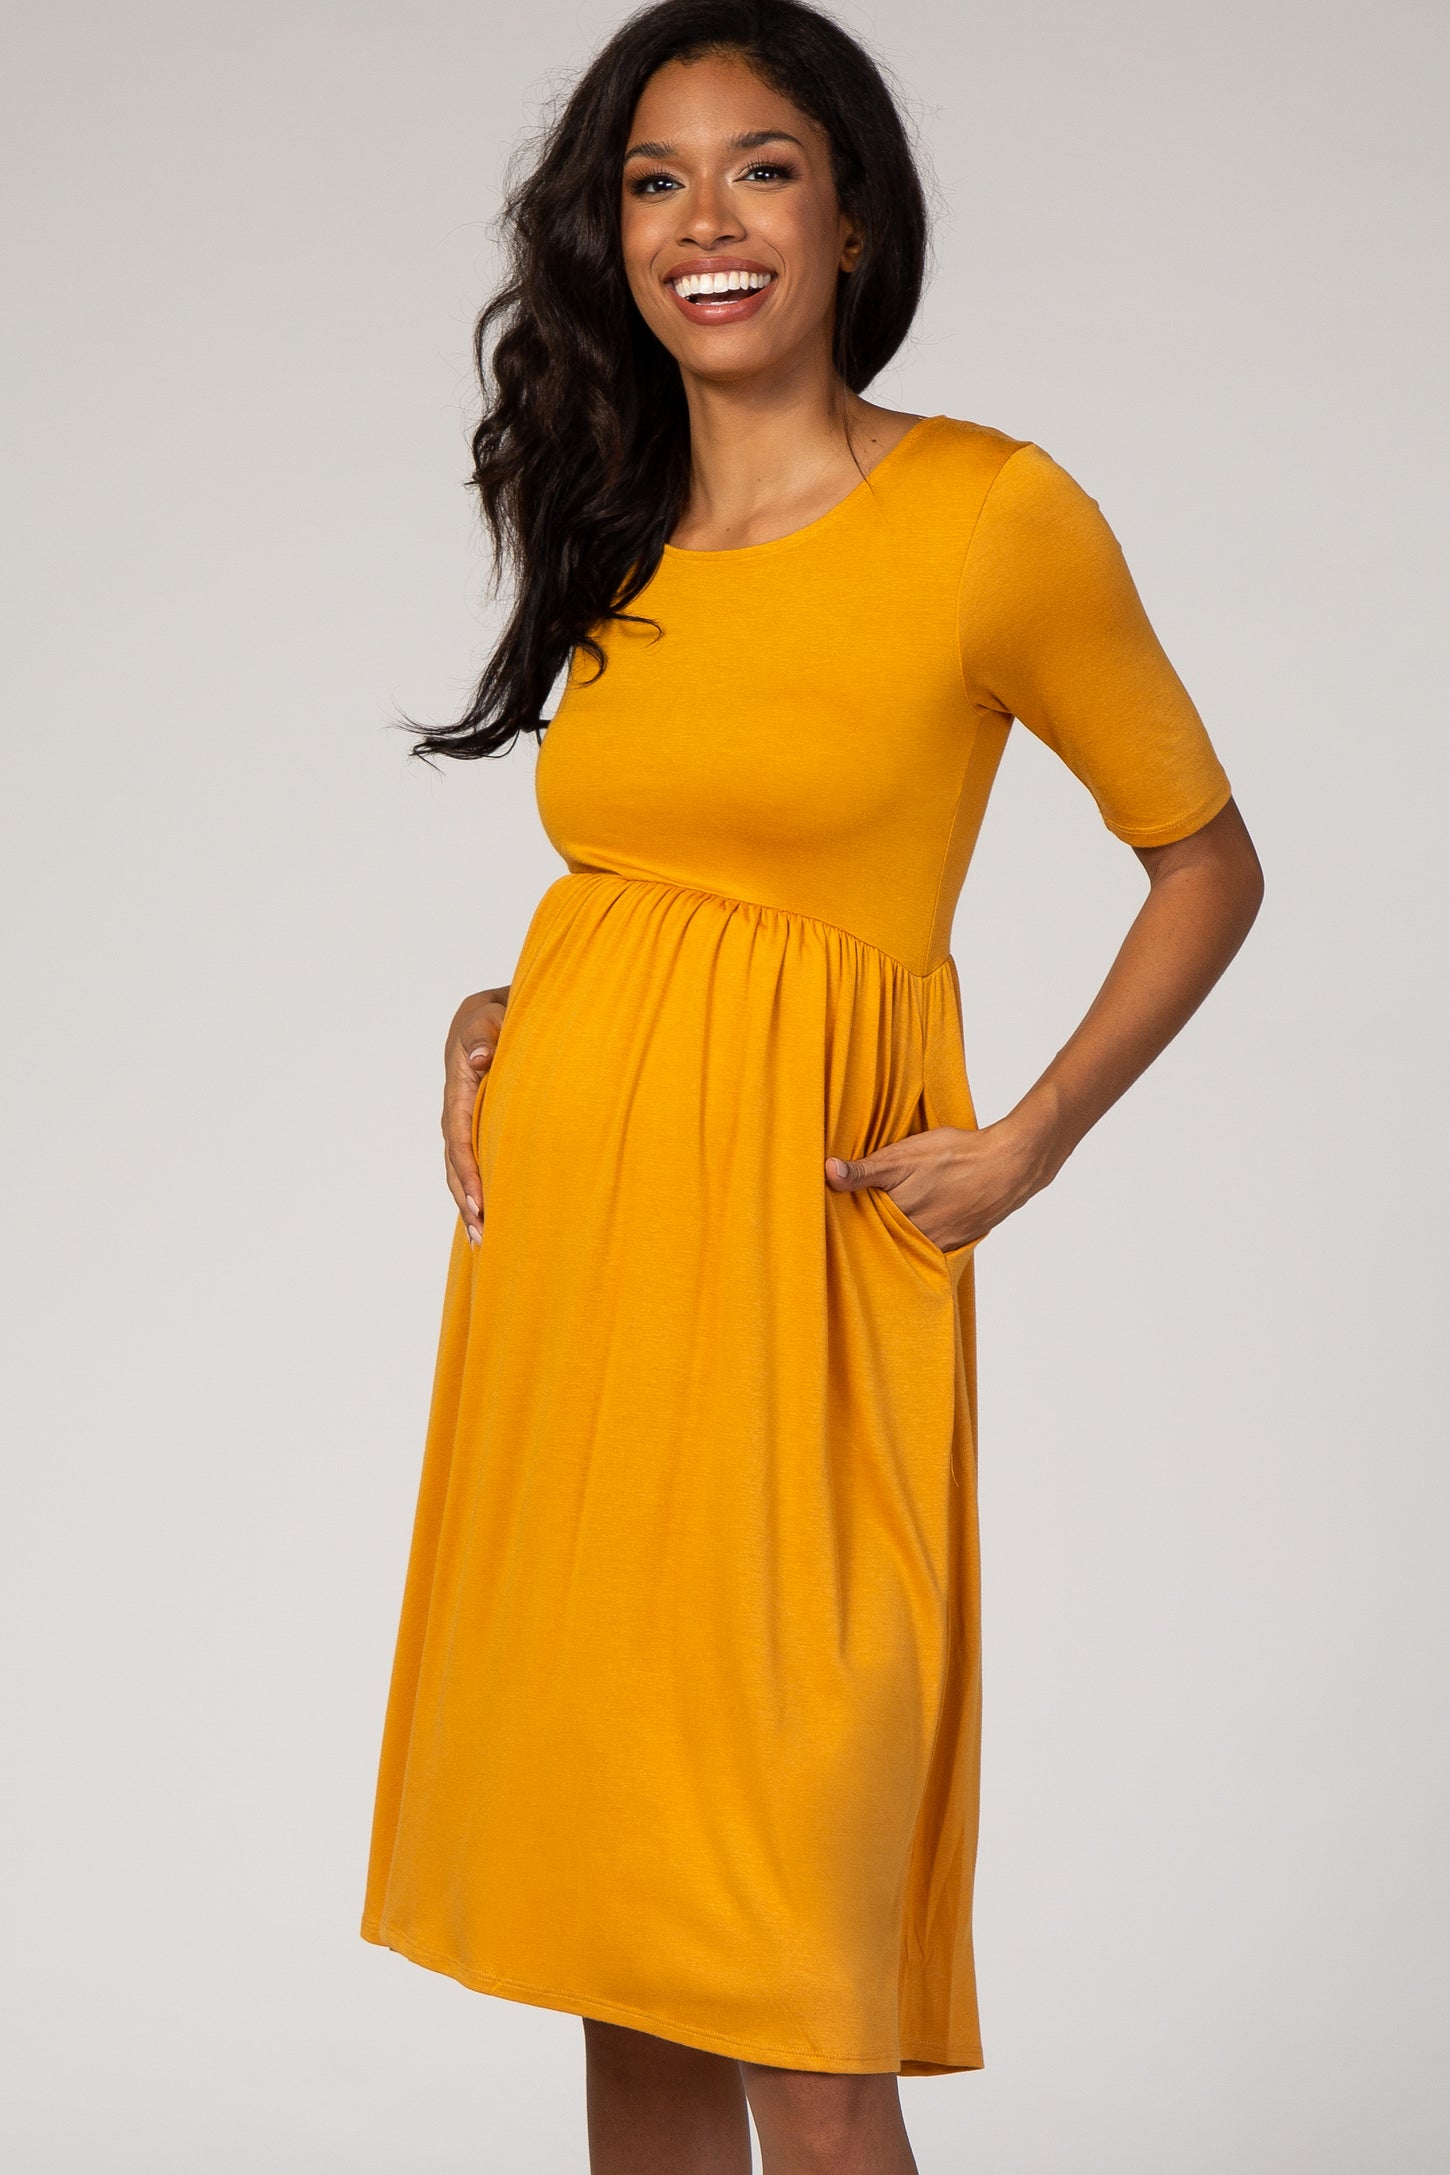 Mustard Short Sleeve Maternity Dress